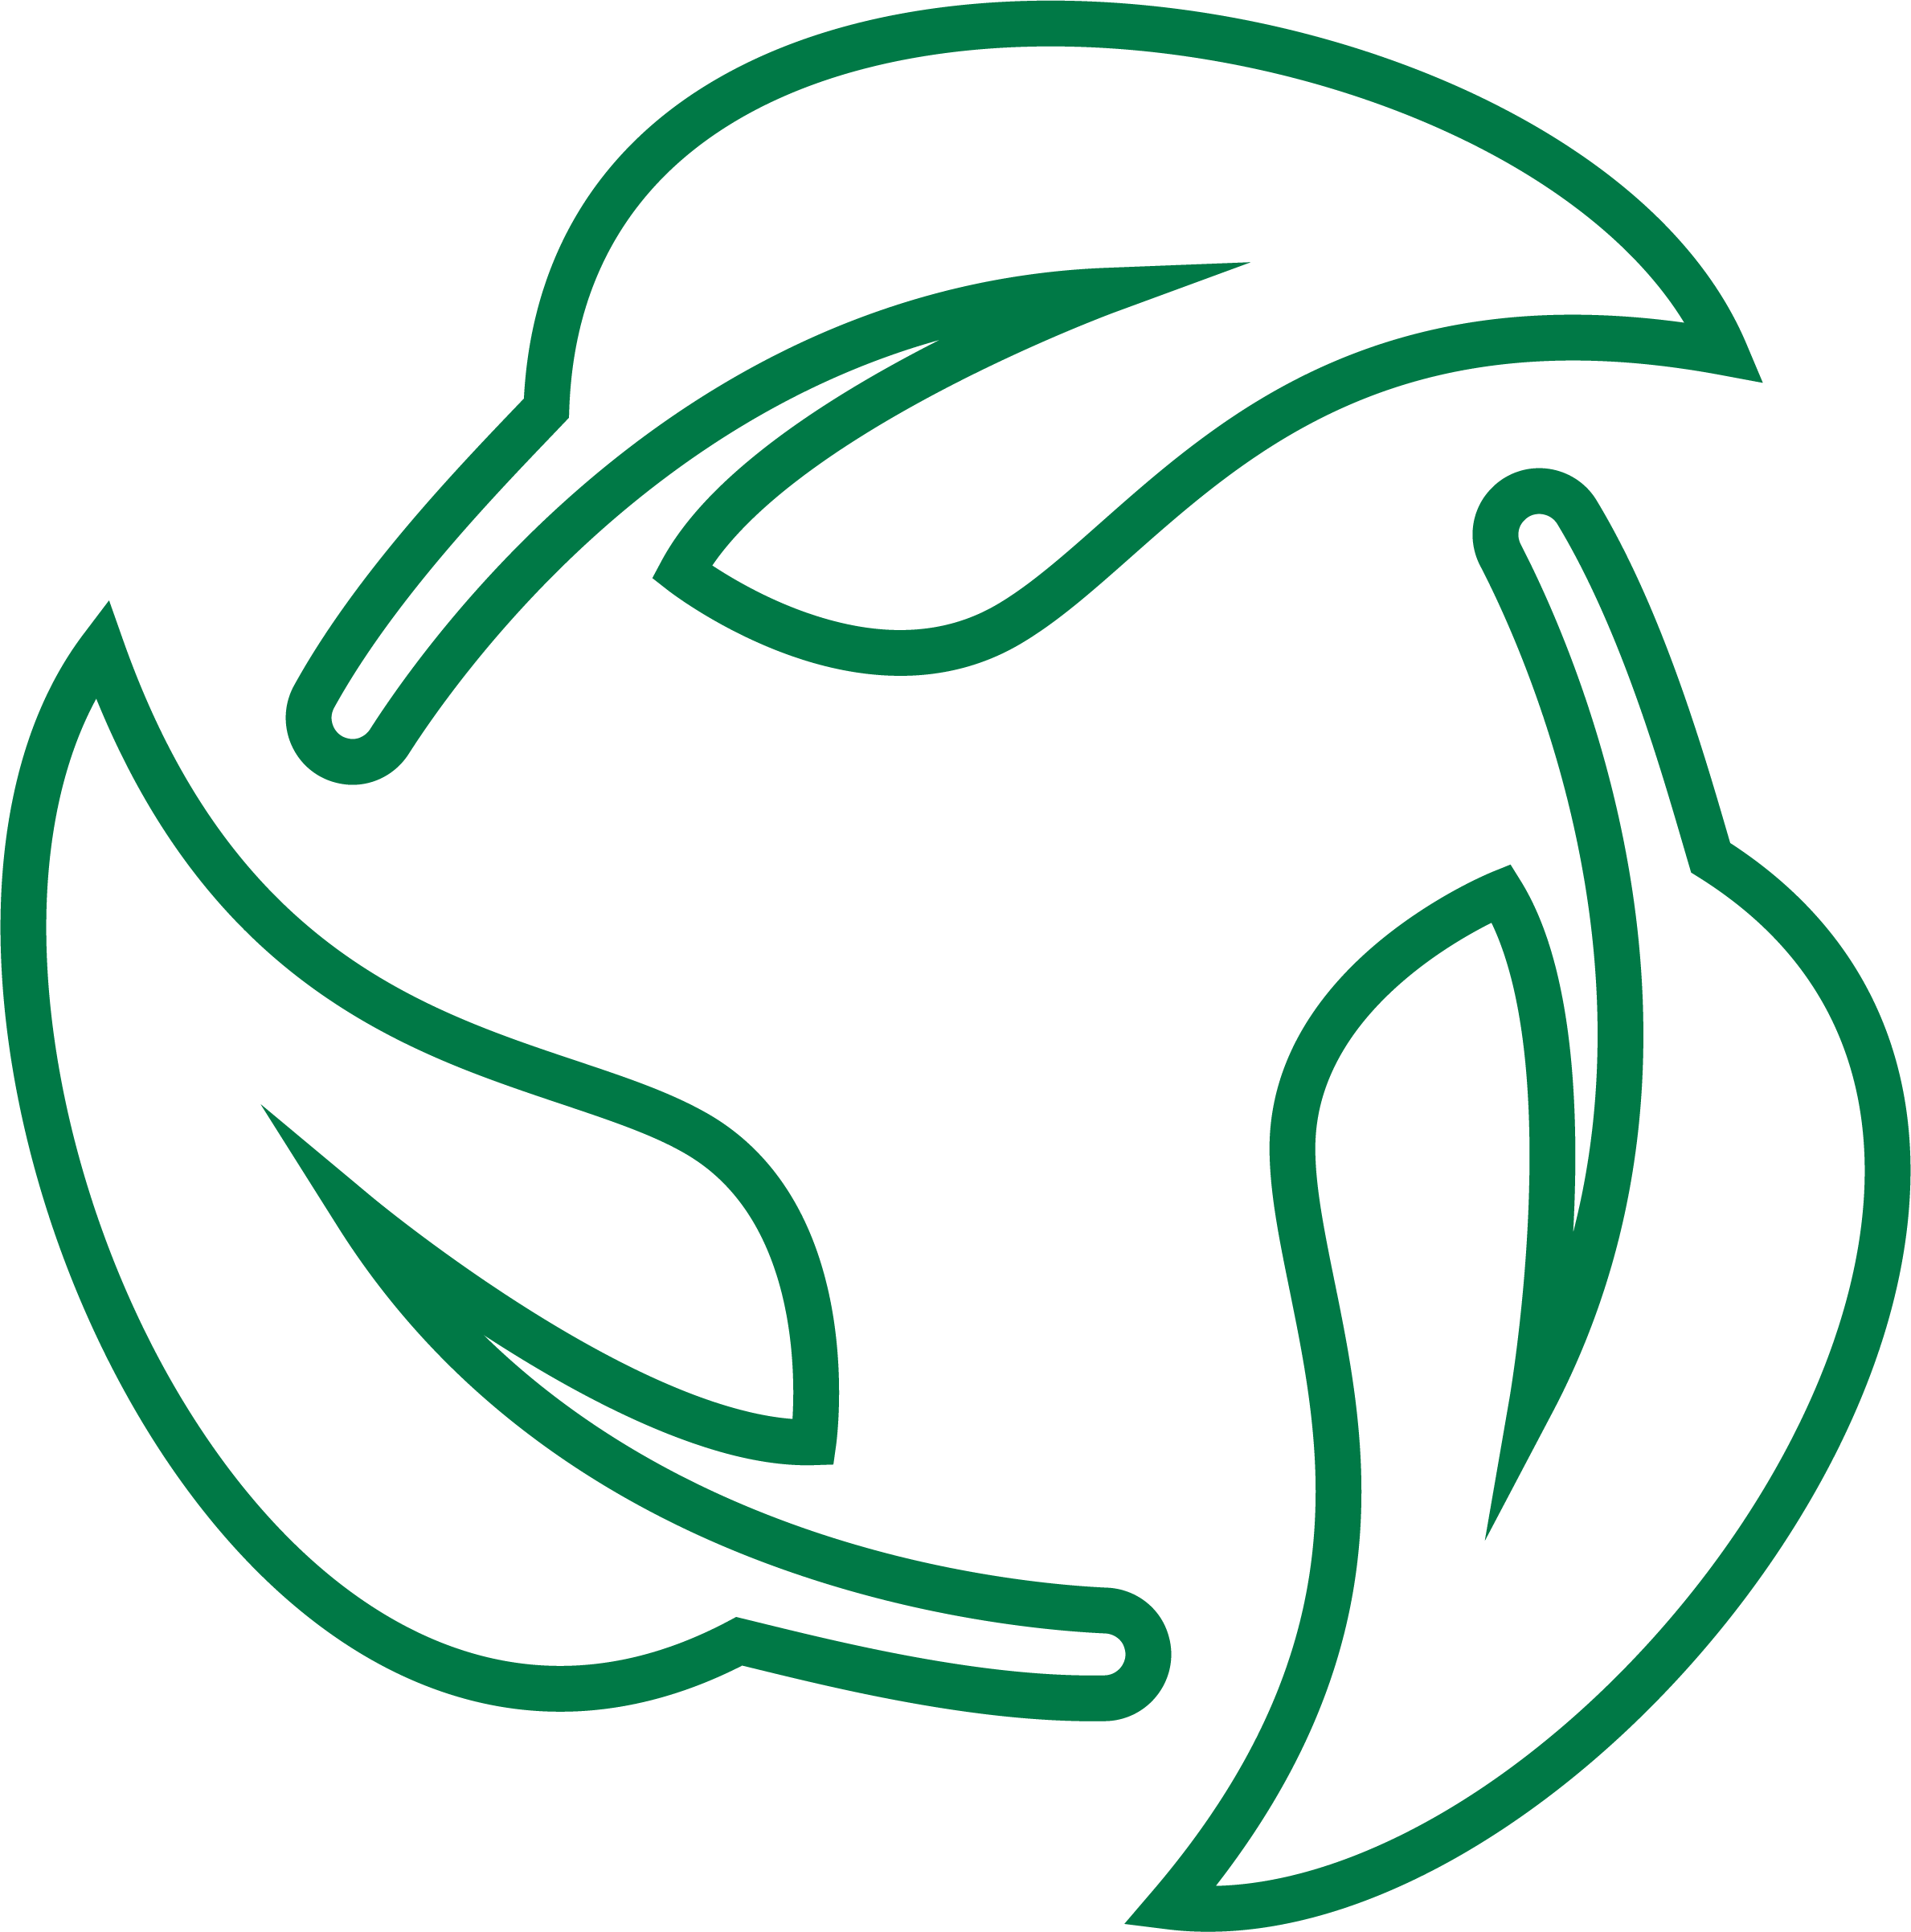 green eco-friendly leaf icon